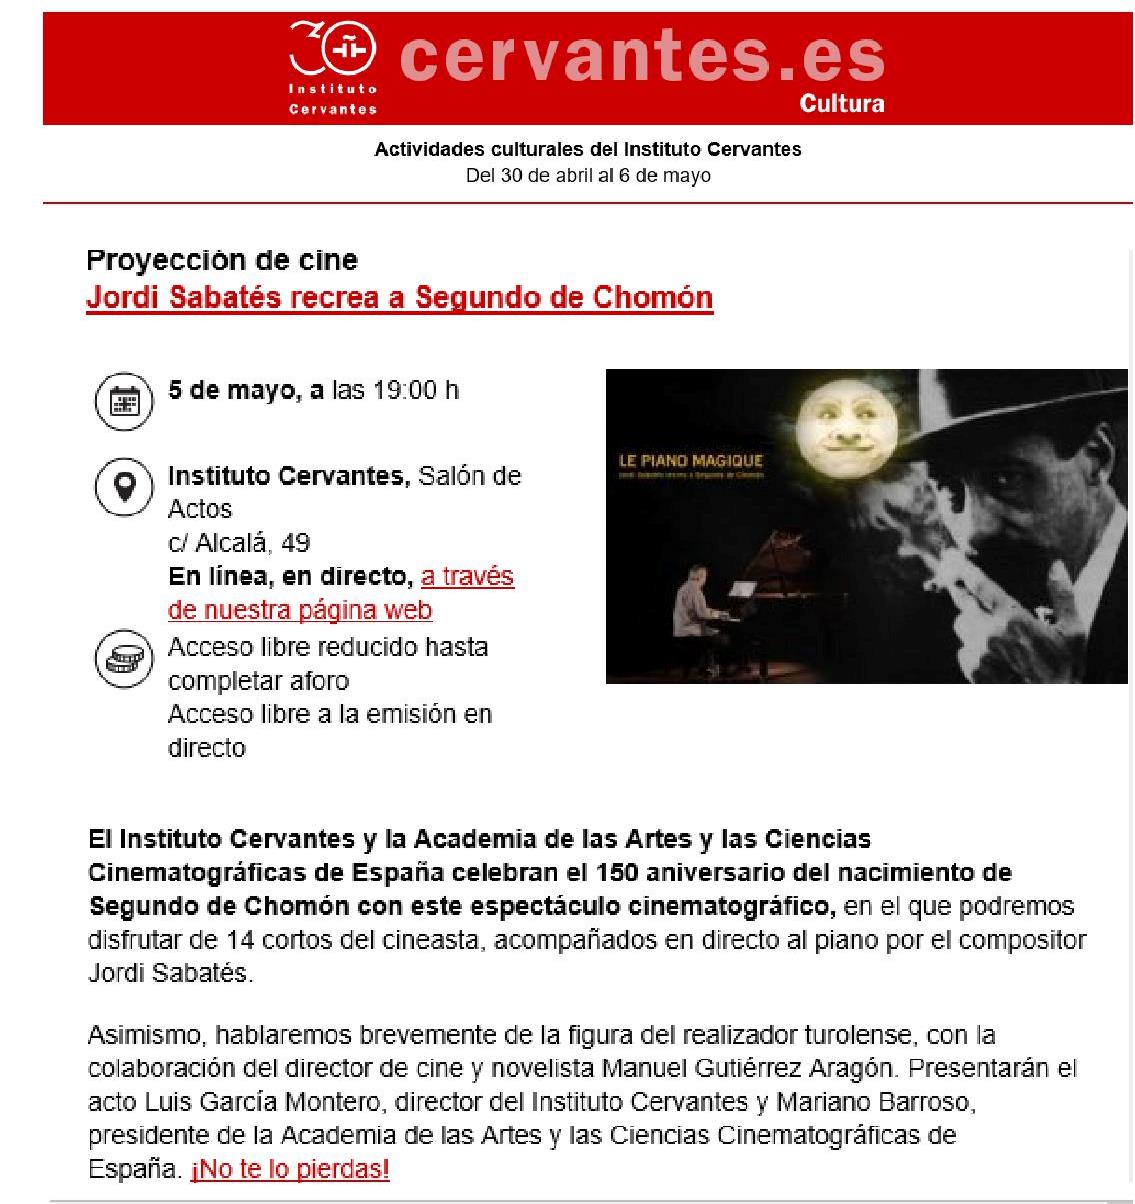 "Jordi Sabatés recrea a Segundo de Chomón" el día 5 de mayo en el Instituto Cervantes en Madrid